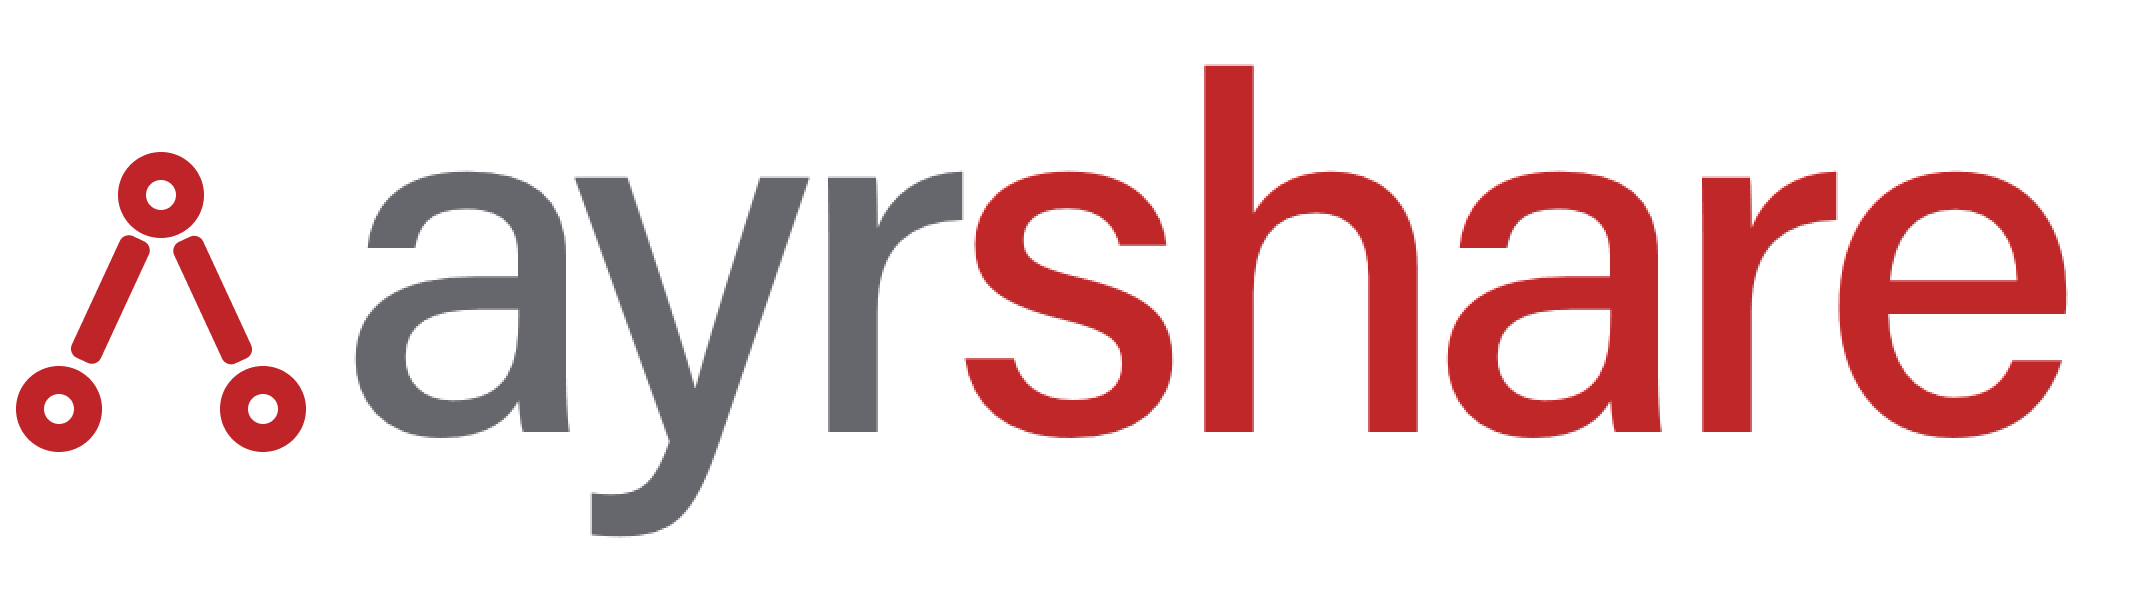 Ayrshare Logo